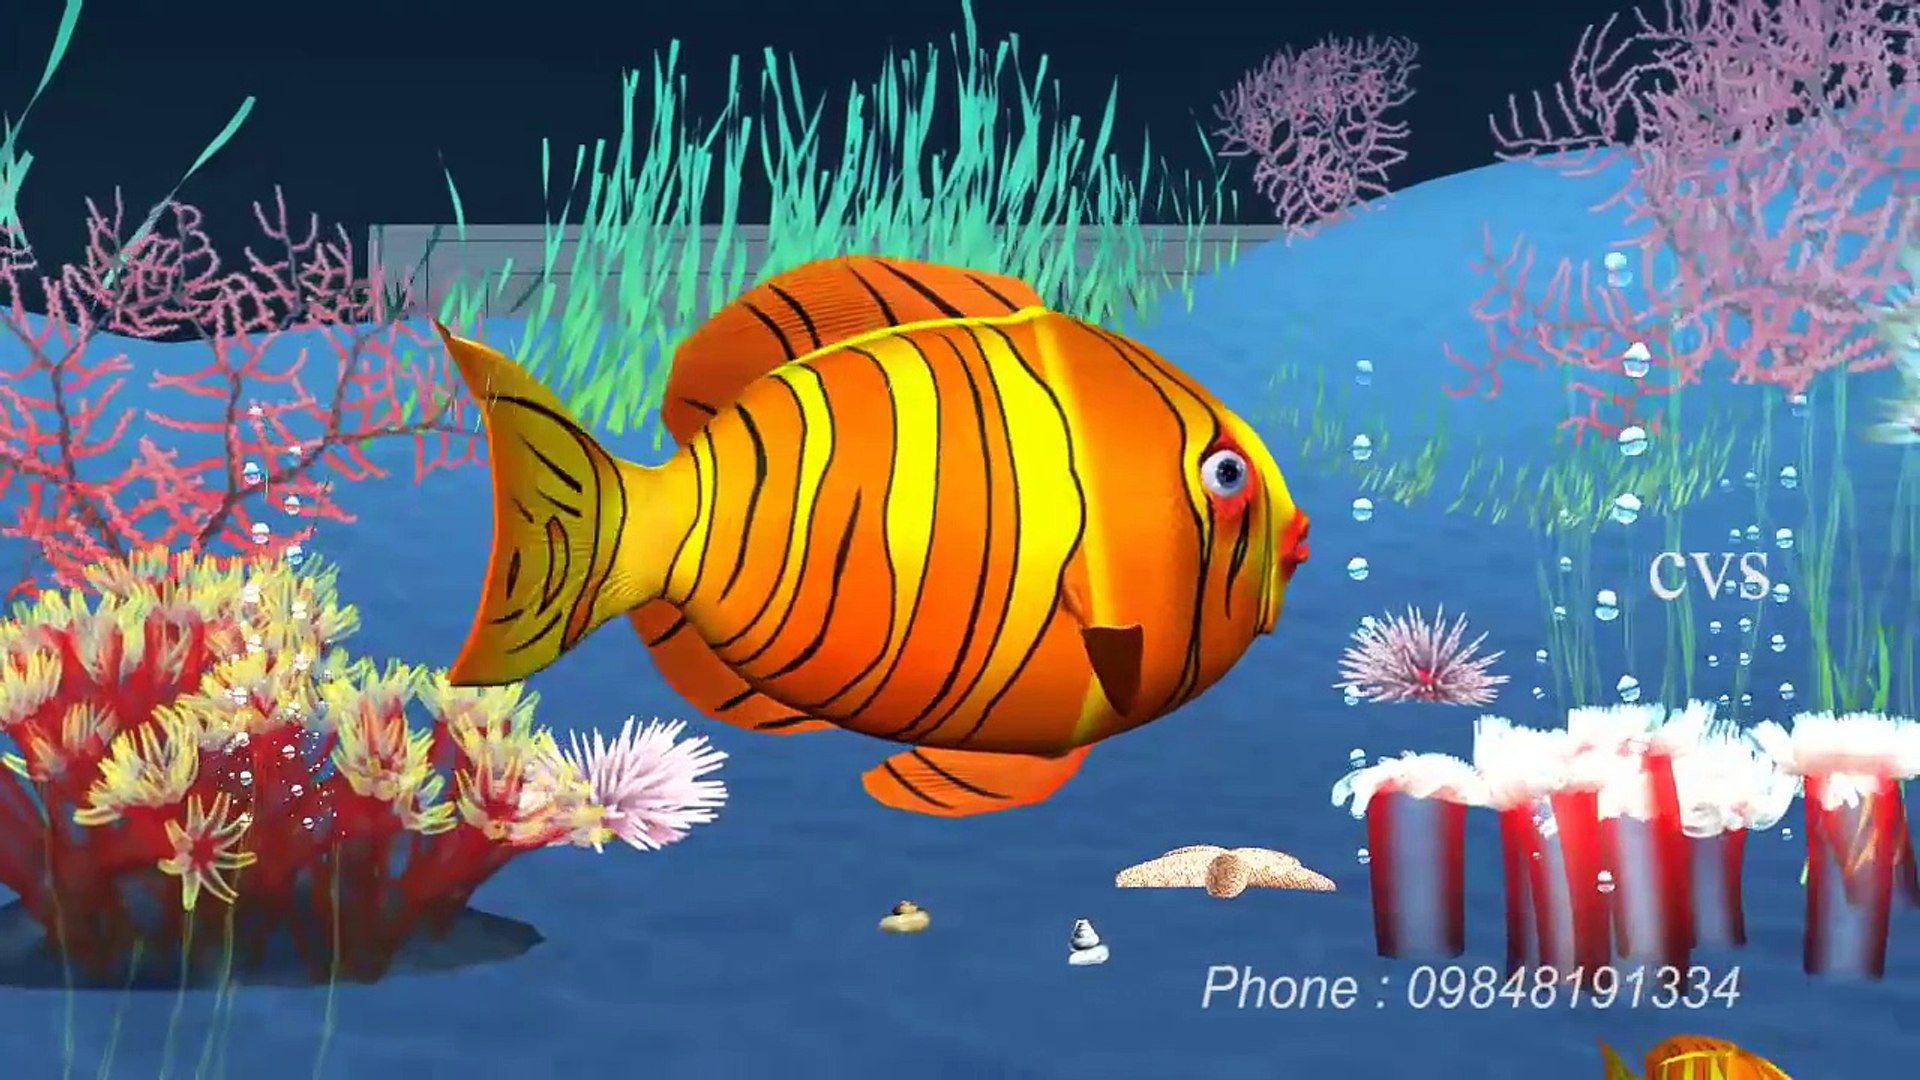 Machli jal ki rani hai - Fish 3D Animation Hindi Nursery rhymes for  children ( Hindi Poem ) - video Dailymotion